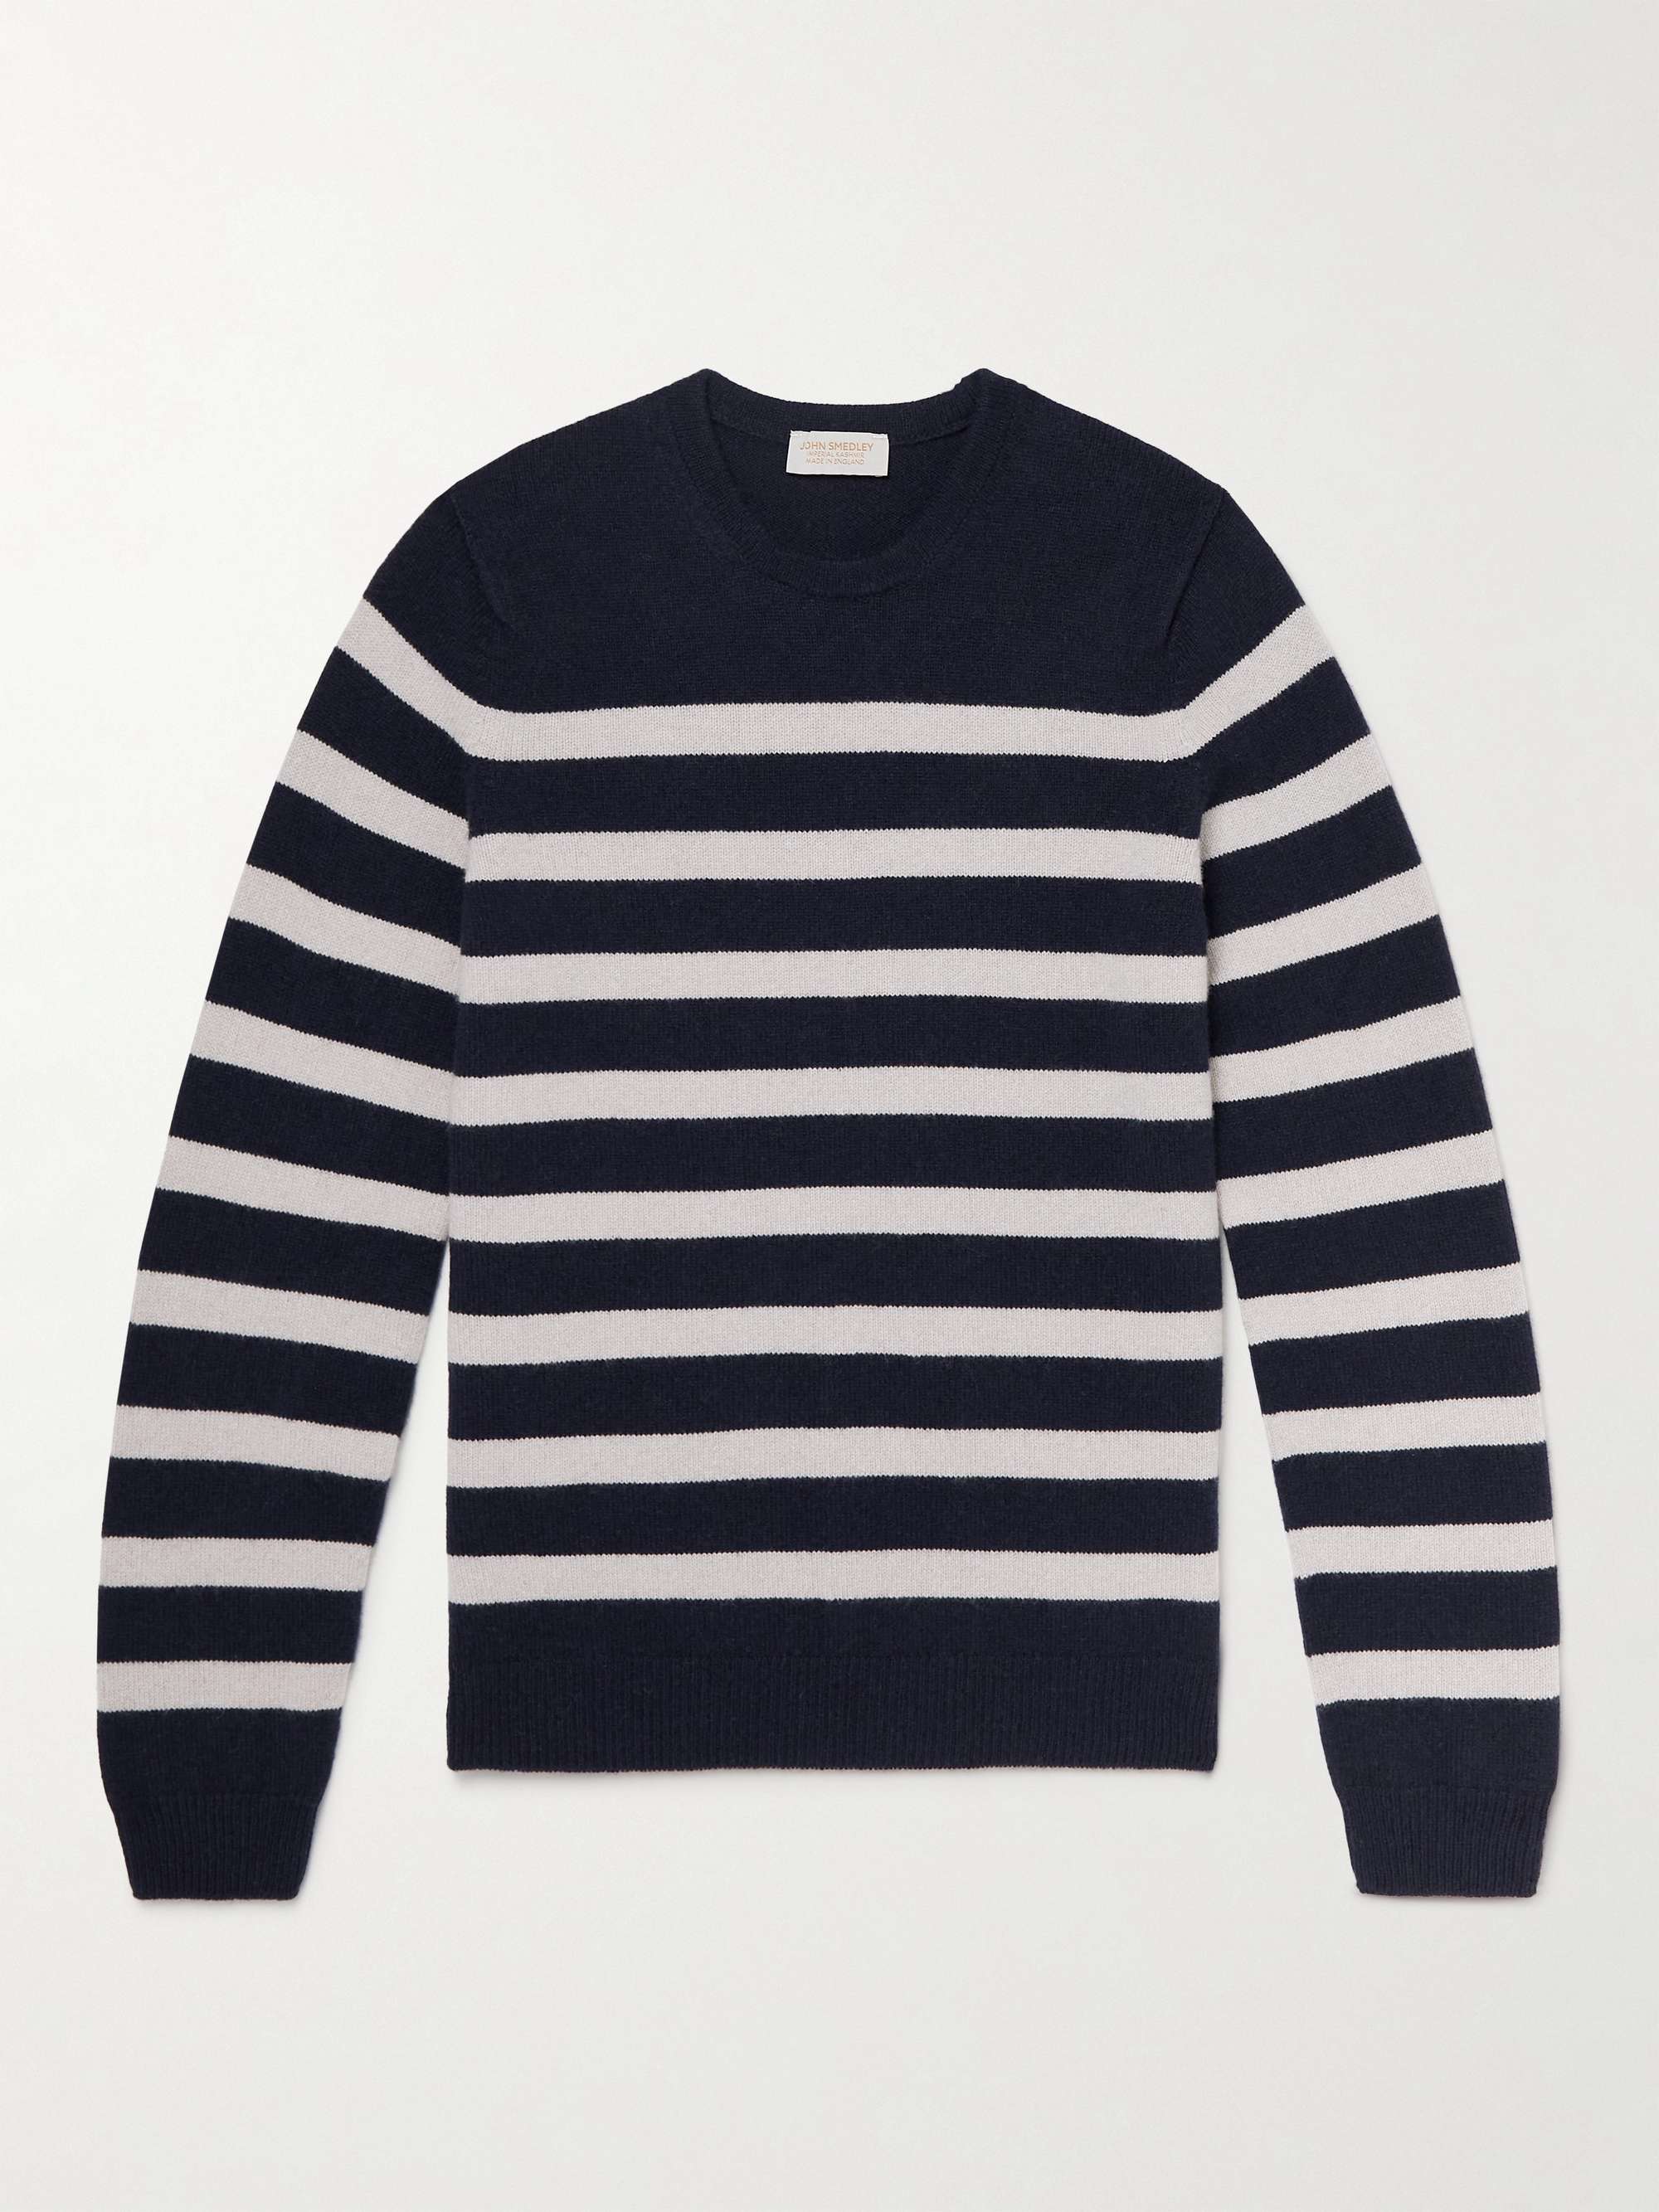 Men women striped Thin Mercerized wool sweater 